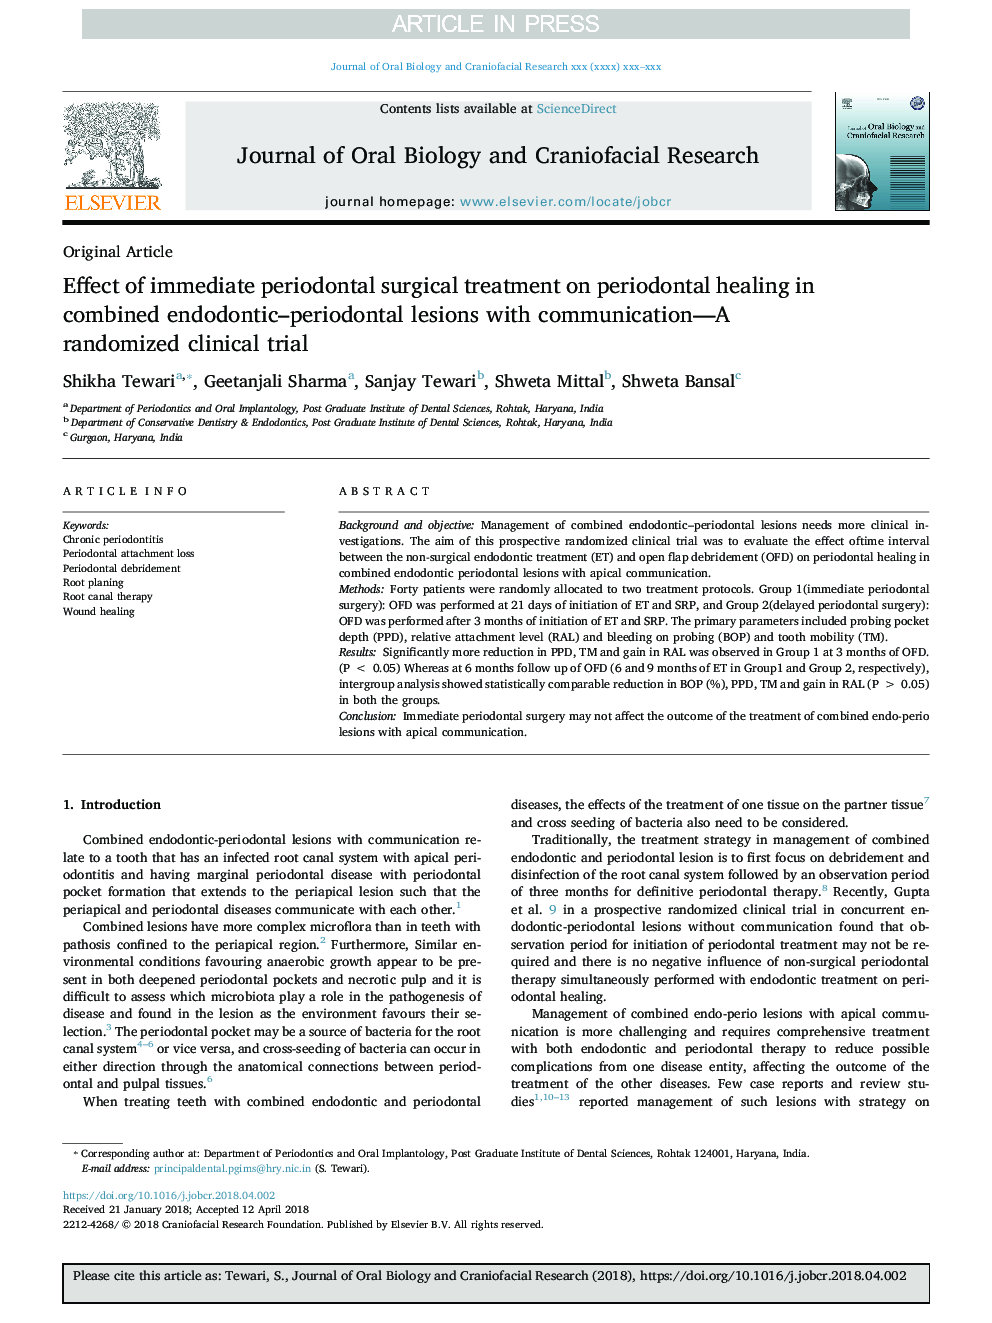 تأثیر درمان جراحی فوری پریودنتال در بهبودی پریودنتال در ضایعات اندودنتیک و پریودنتال ترکیبی با یک کارآزمایی بالینی تصادفی 